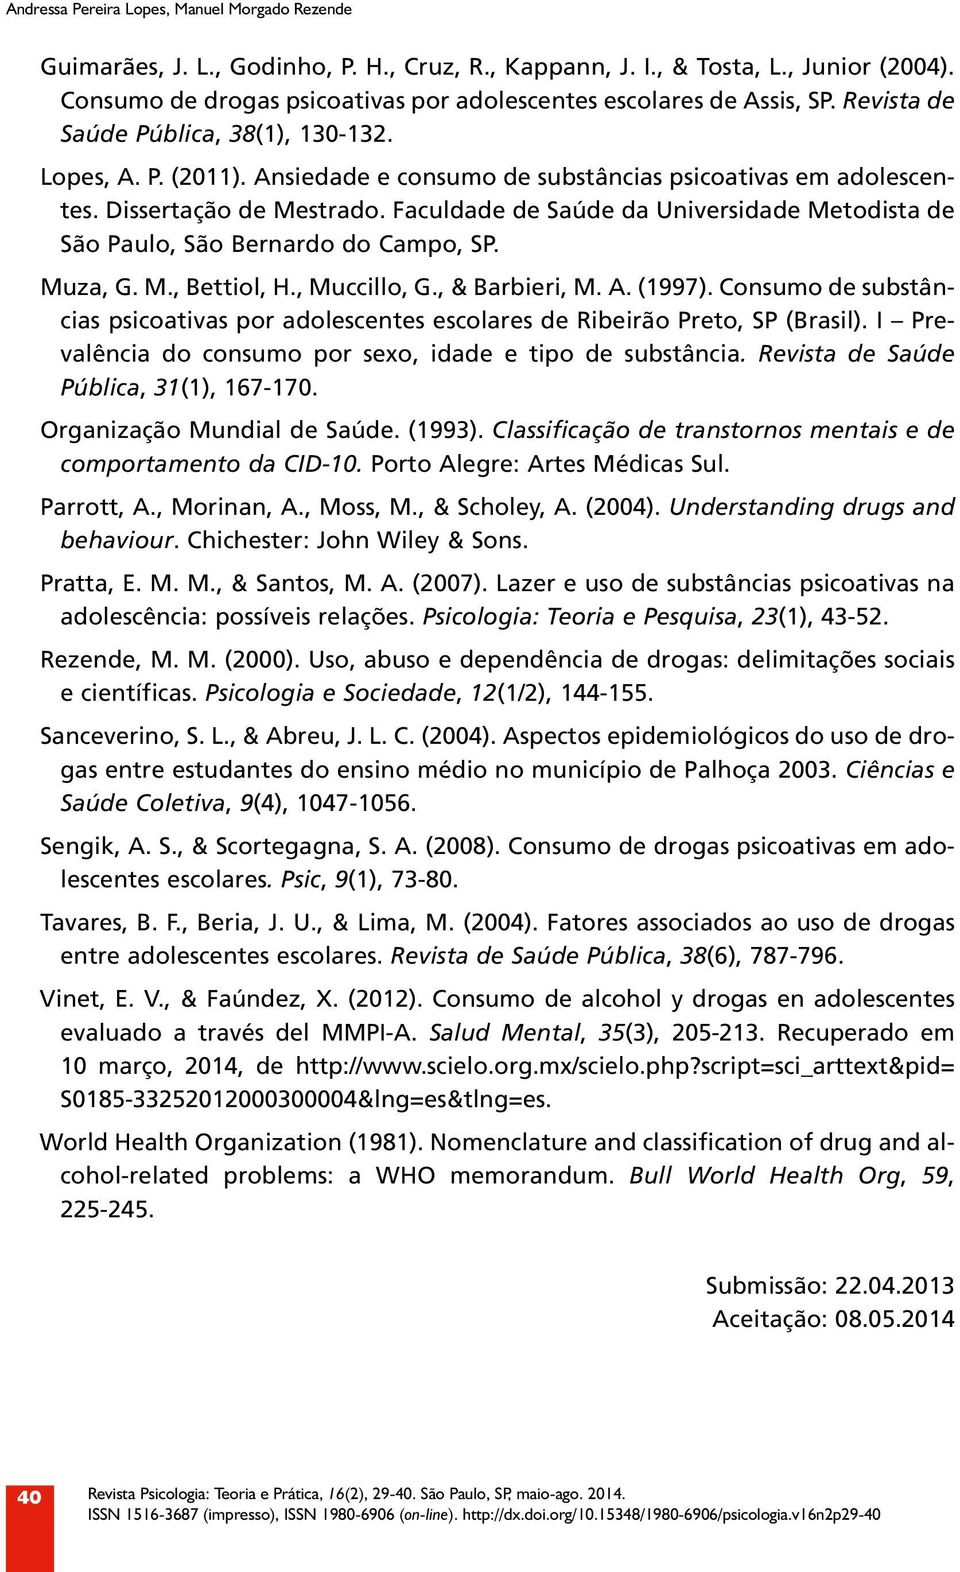 Dissertação de Mestrado. Faculdade de Saúde da Universidade Metodista de São Paulo, São Bernardo do Campo, SP. Muza, G. M., Bettiol, H., Muccillo, G., & Barbieri, M. A. (1997).